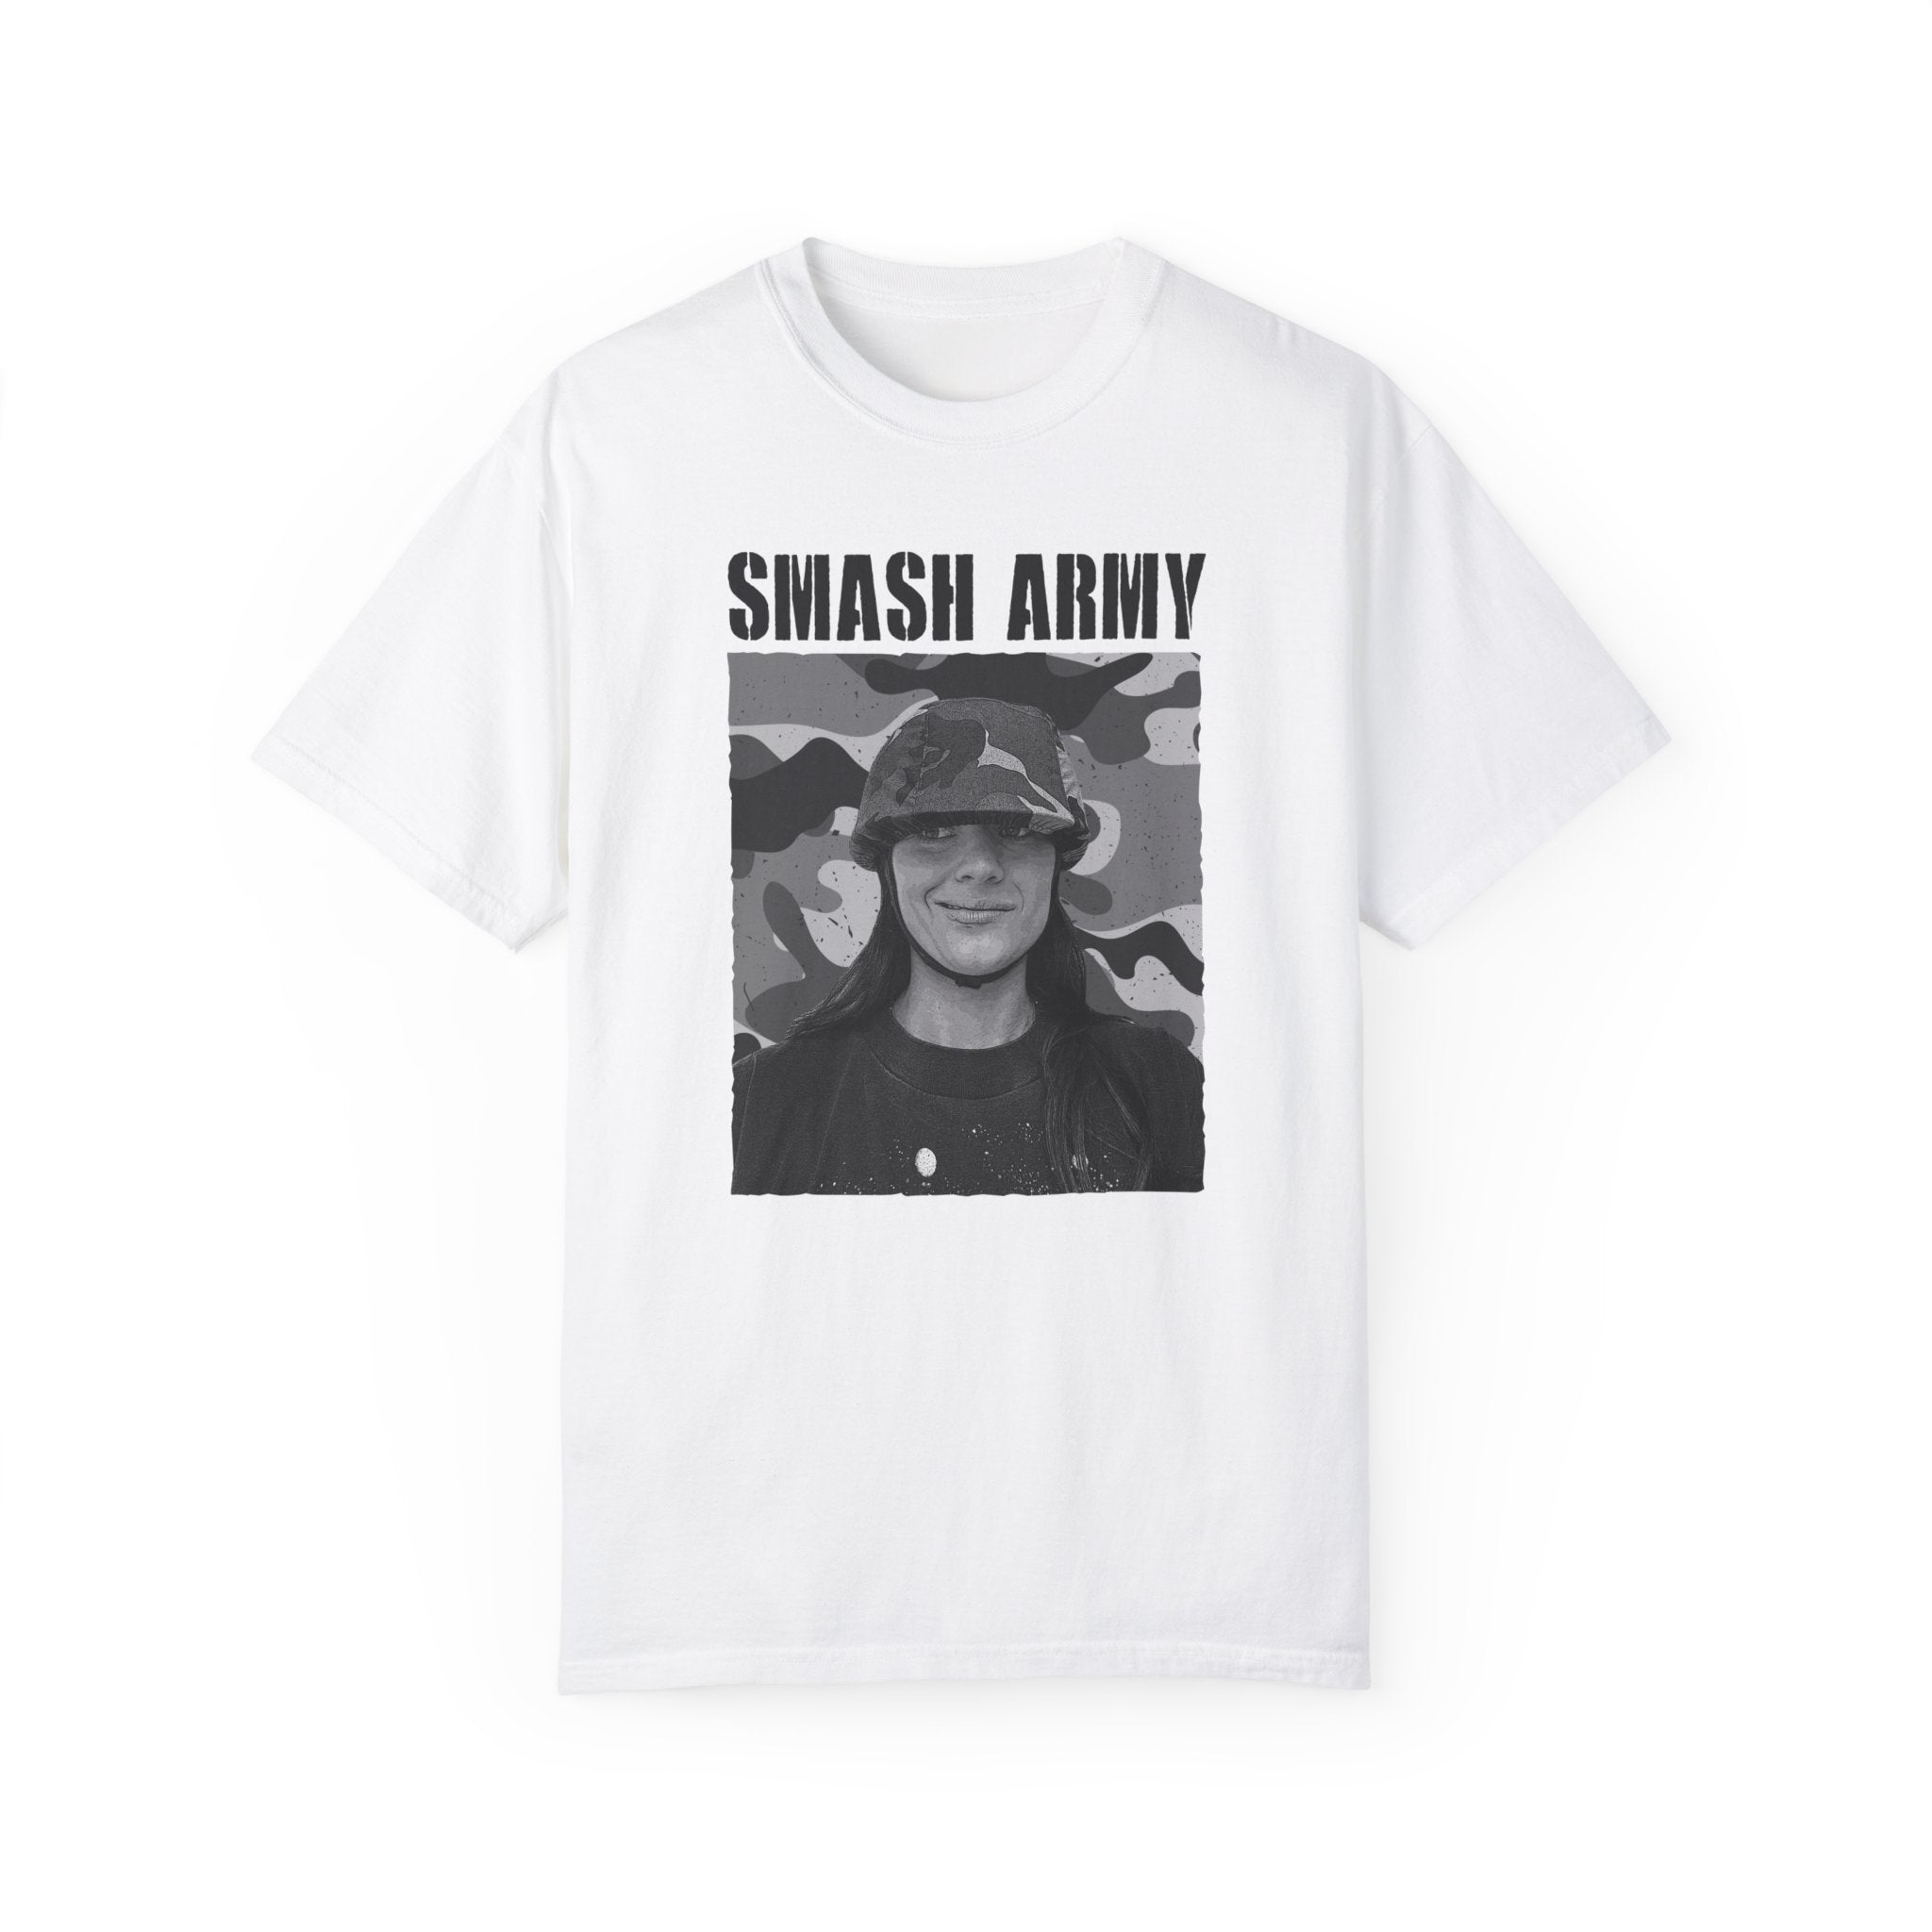 Smash Army Tee